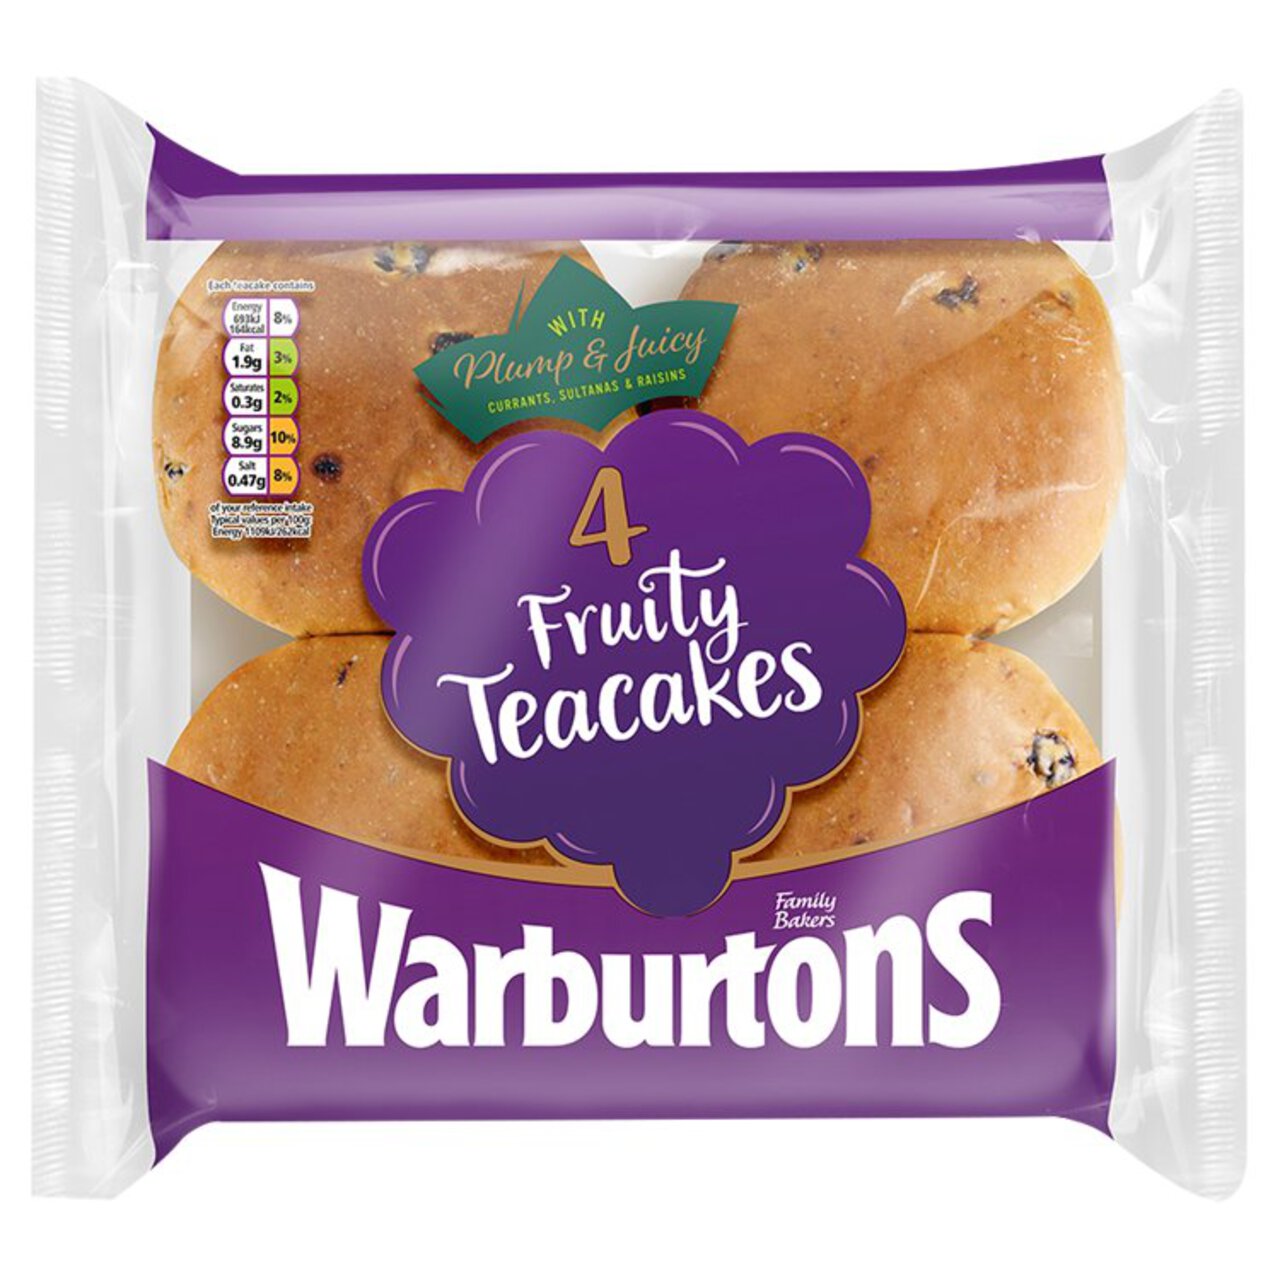 Warburtons Fruity Teacakes 4 per pack